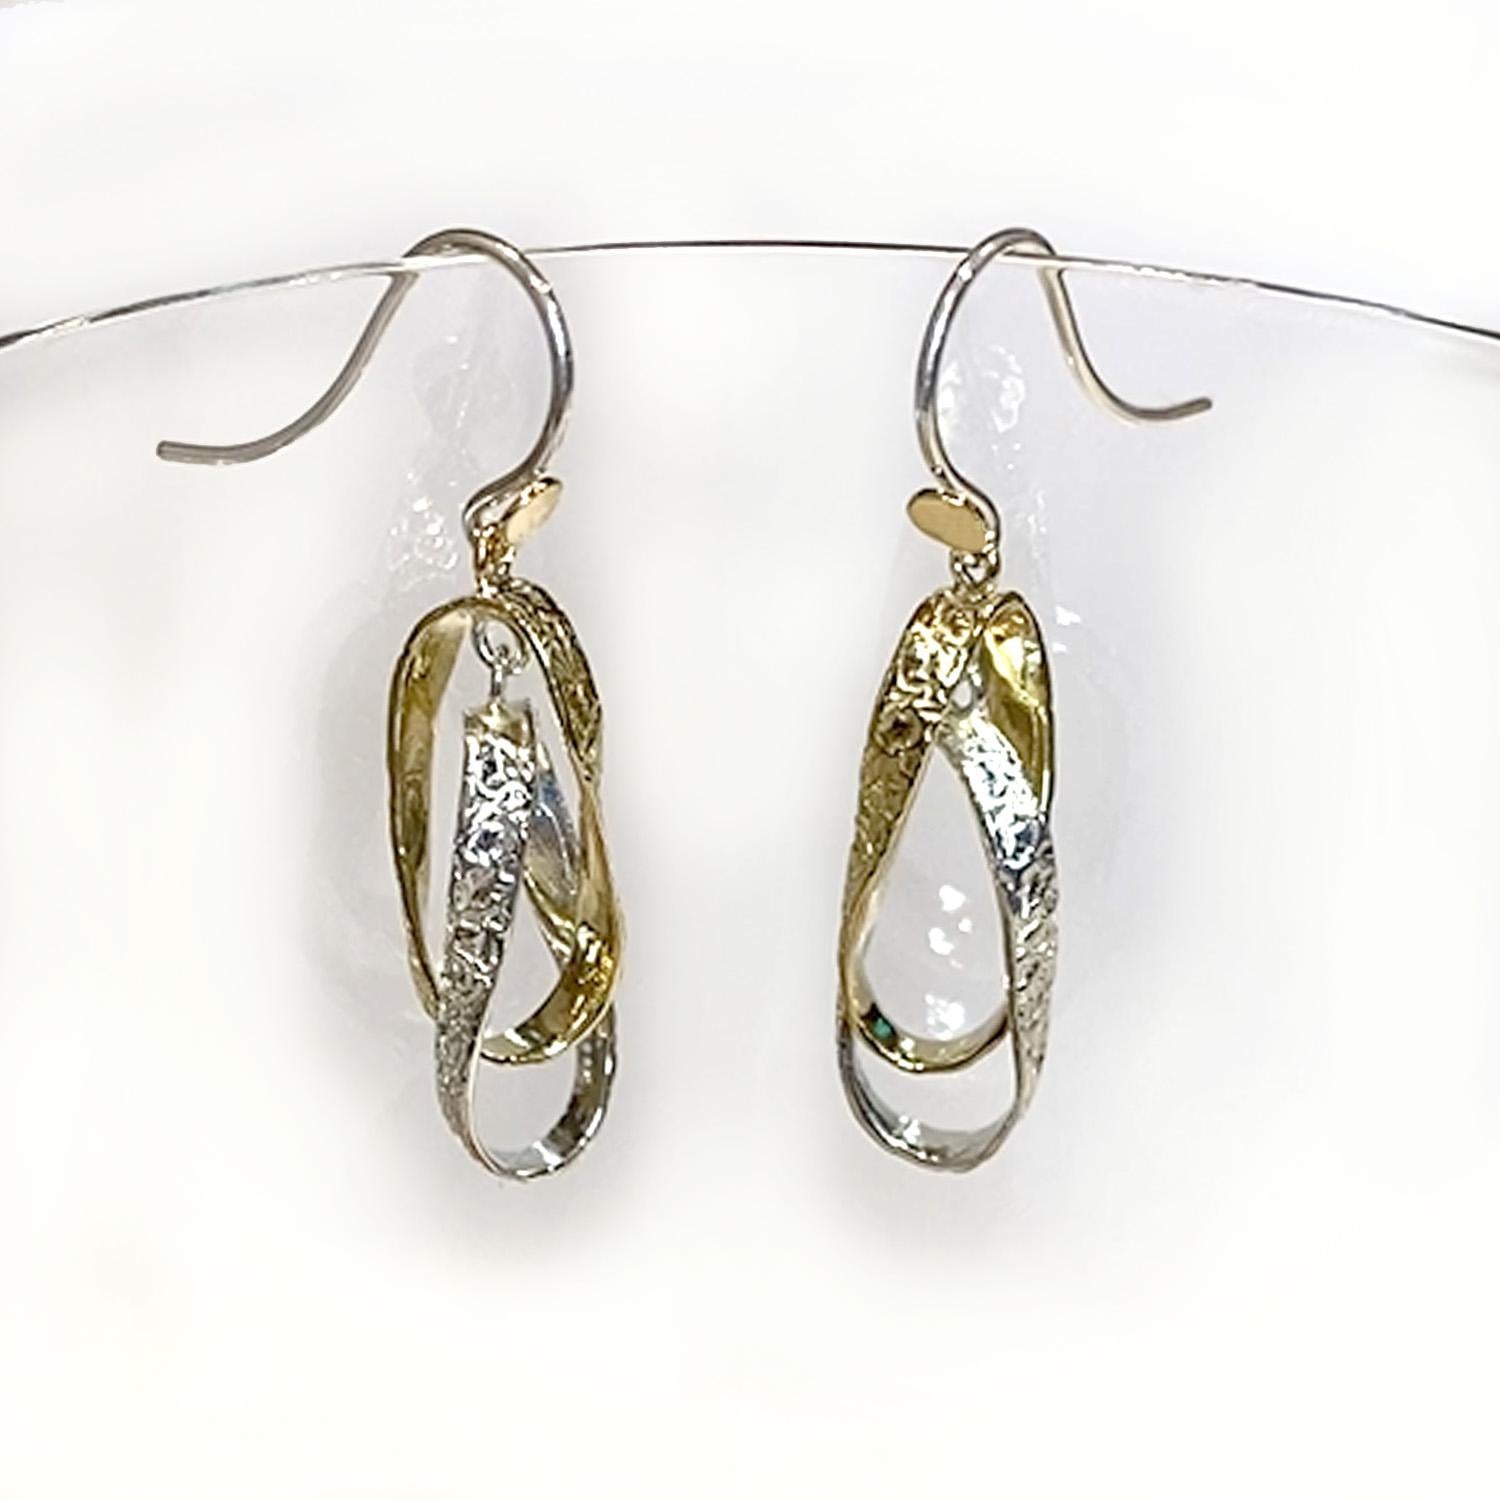 Les boucles d'oreilles imbriquées uniques de Keiko Mita sont fabriquées à la main en or jaune 14 carats et en argent sterling. Les boucles d'oreilles artistiques de la collection Washi de l'artiste mesurent 38 mm de long et 10 mm de large. Le washi